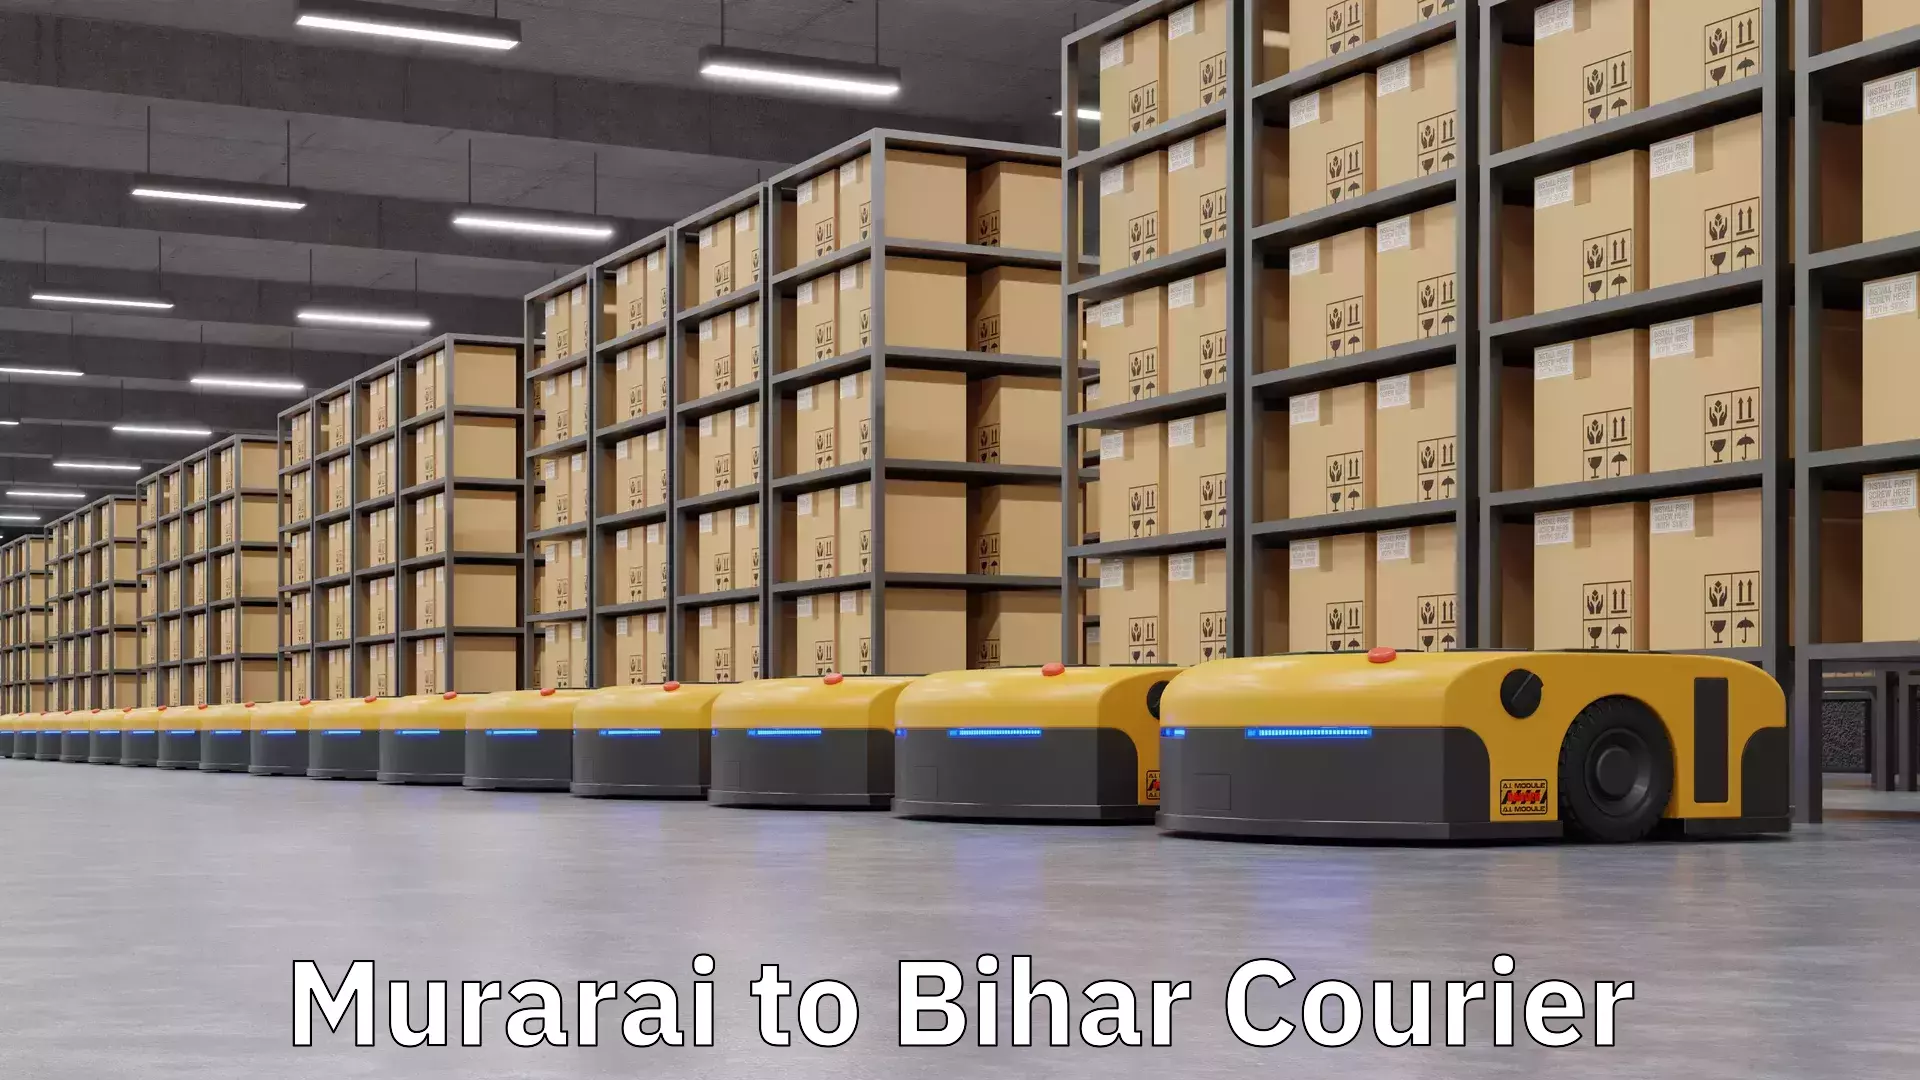 Local delivery service Murarai to Bihar